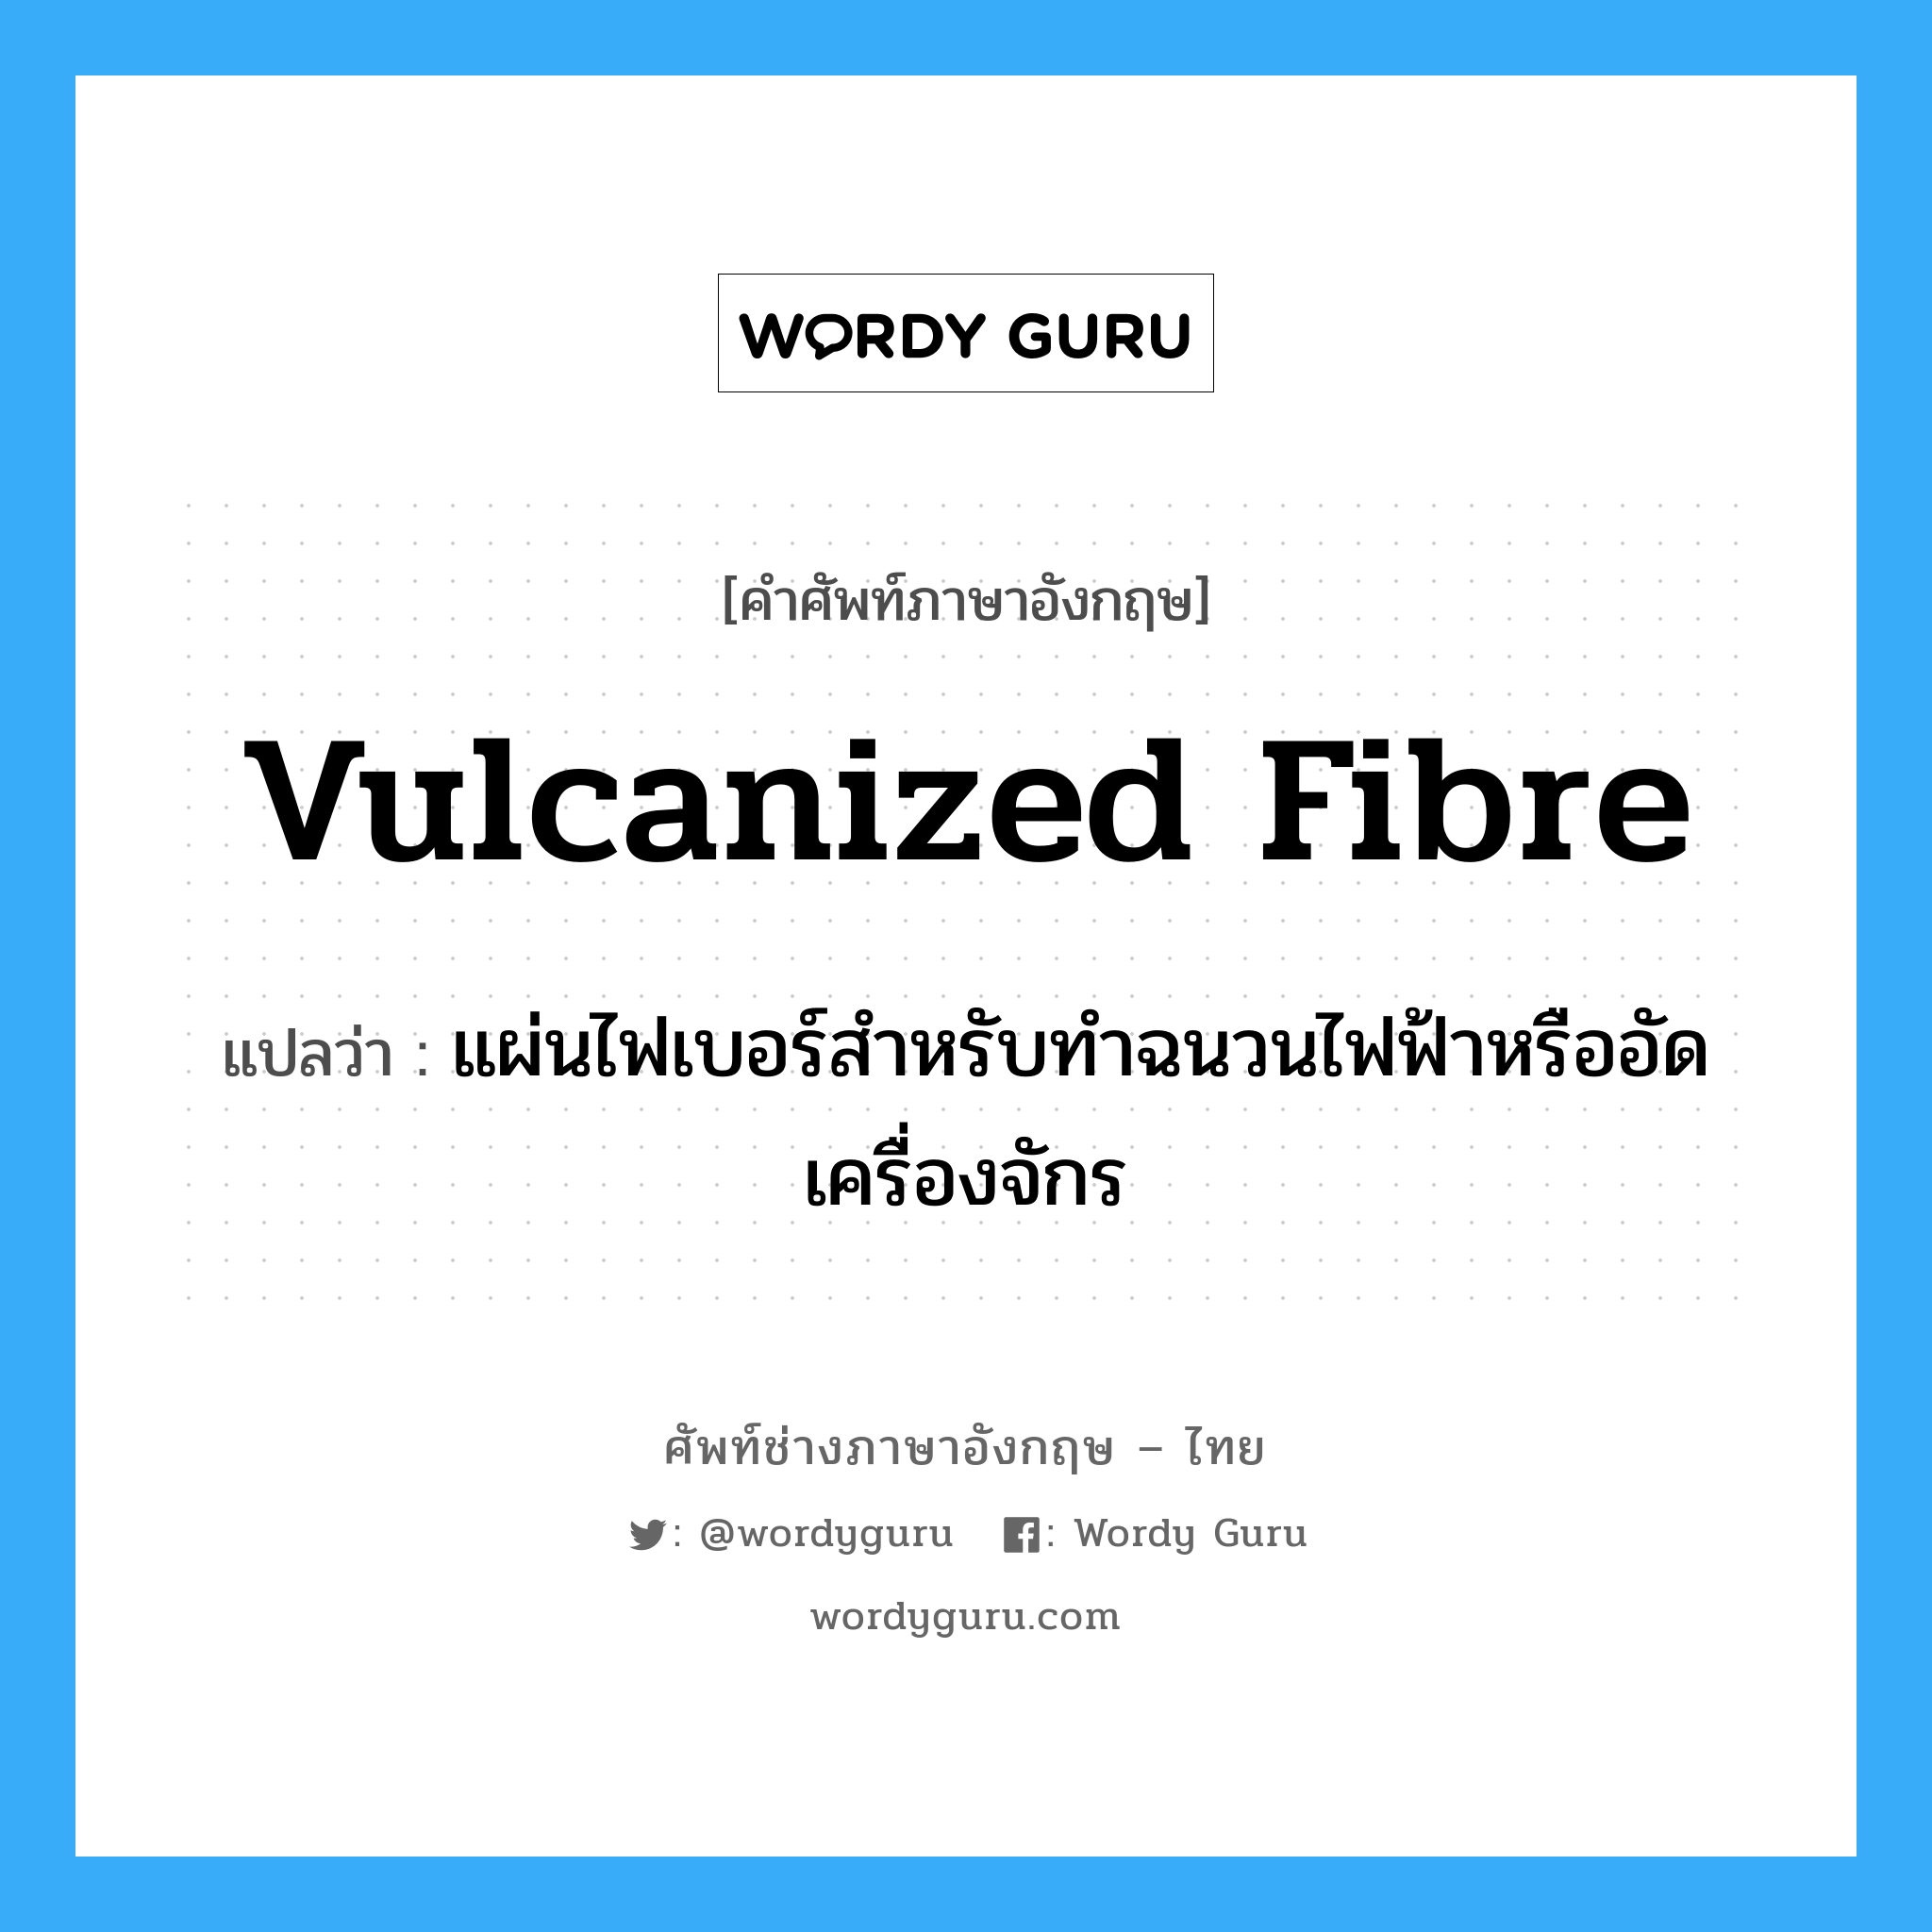 vulcanized fibre แปลว่า?, คำศัพท์ช่างภาษาอังกฤษ - ไทย vulcanized fibre คำศัพท์ภาษาอังกฤษ vulcanized fibre แปลว่า แผ่นไฟเบอร์สำหรับทำฉนวนไฟฟ้าหรืออัดเครื่องจักร